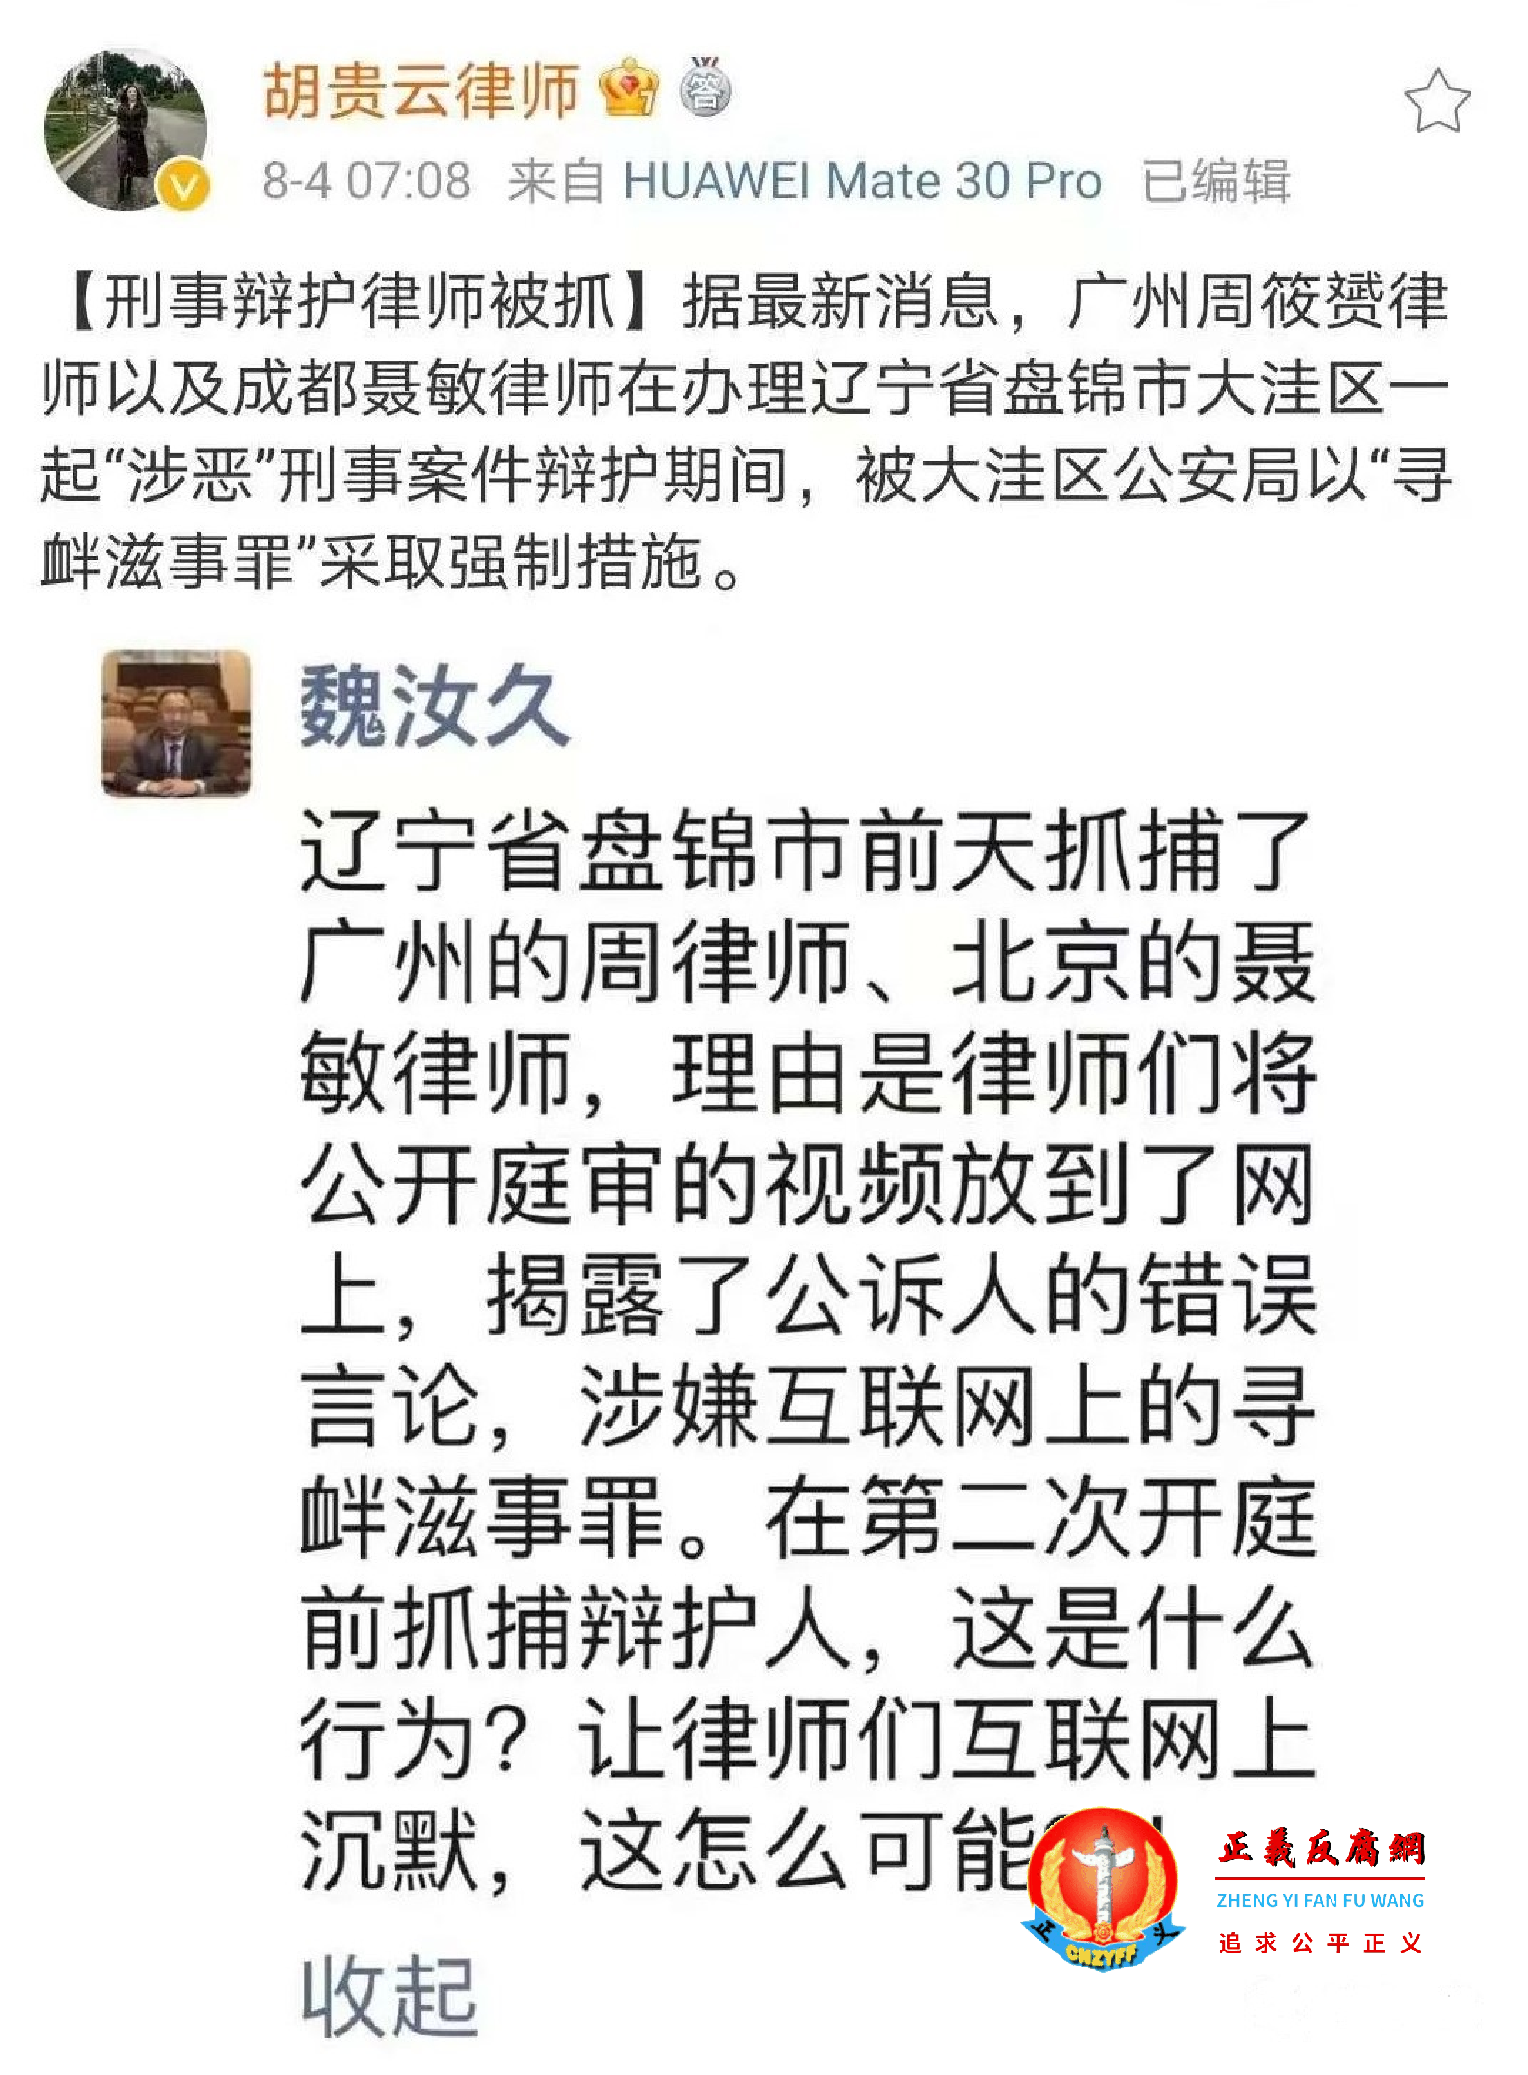 周筱赟律师以“涉嫌寻衅滋事罪”遭跨省抓走， 引起法律界人士的关注及声援。.png